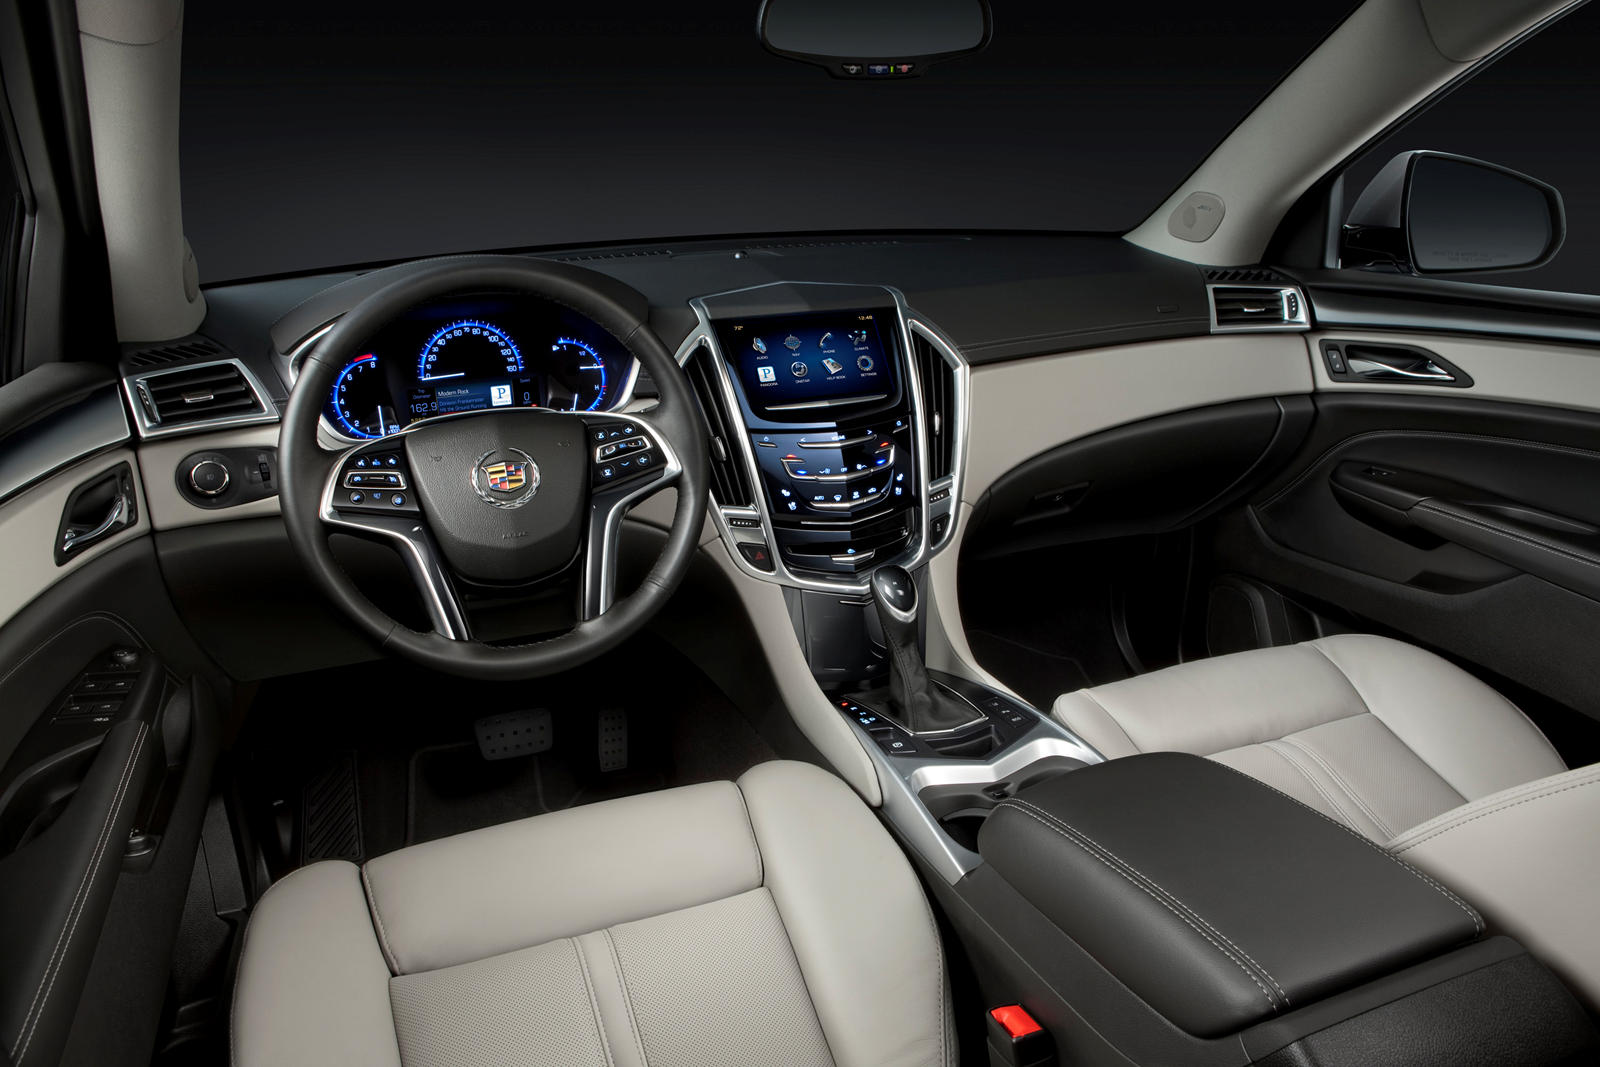 2012 Cadillac SRX Interior Photos | CarBuzz